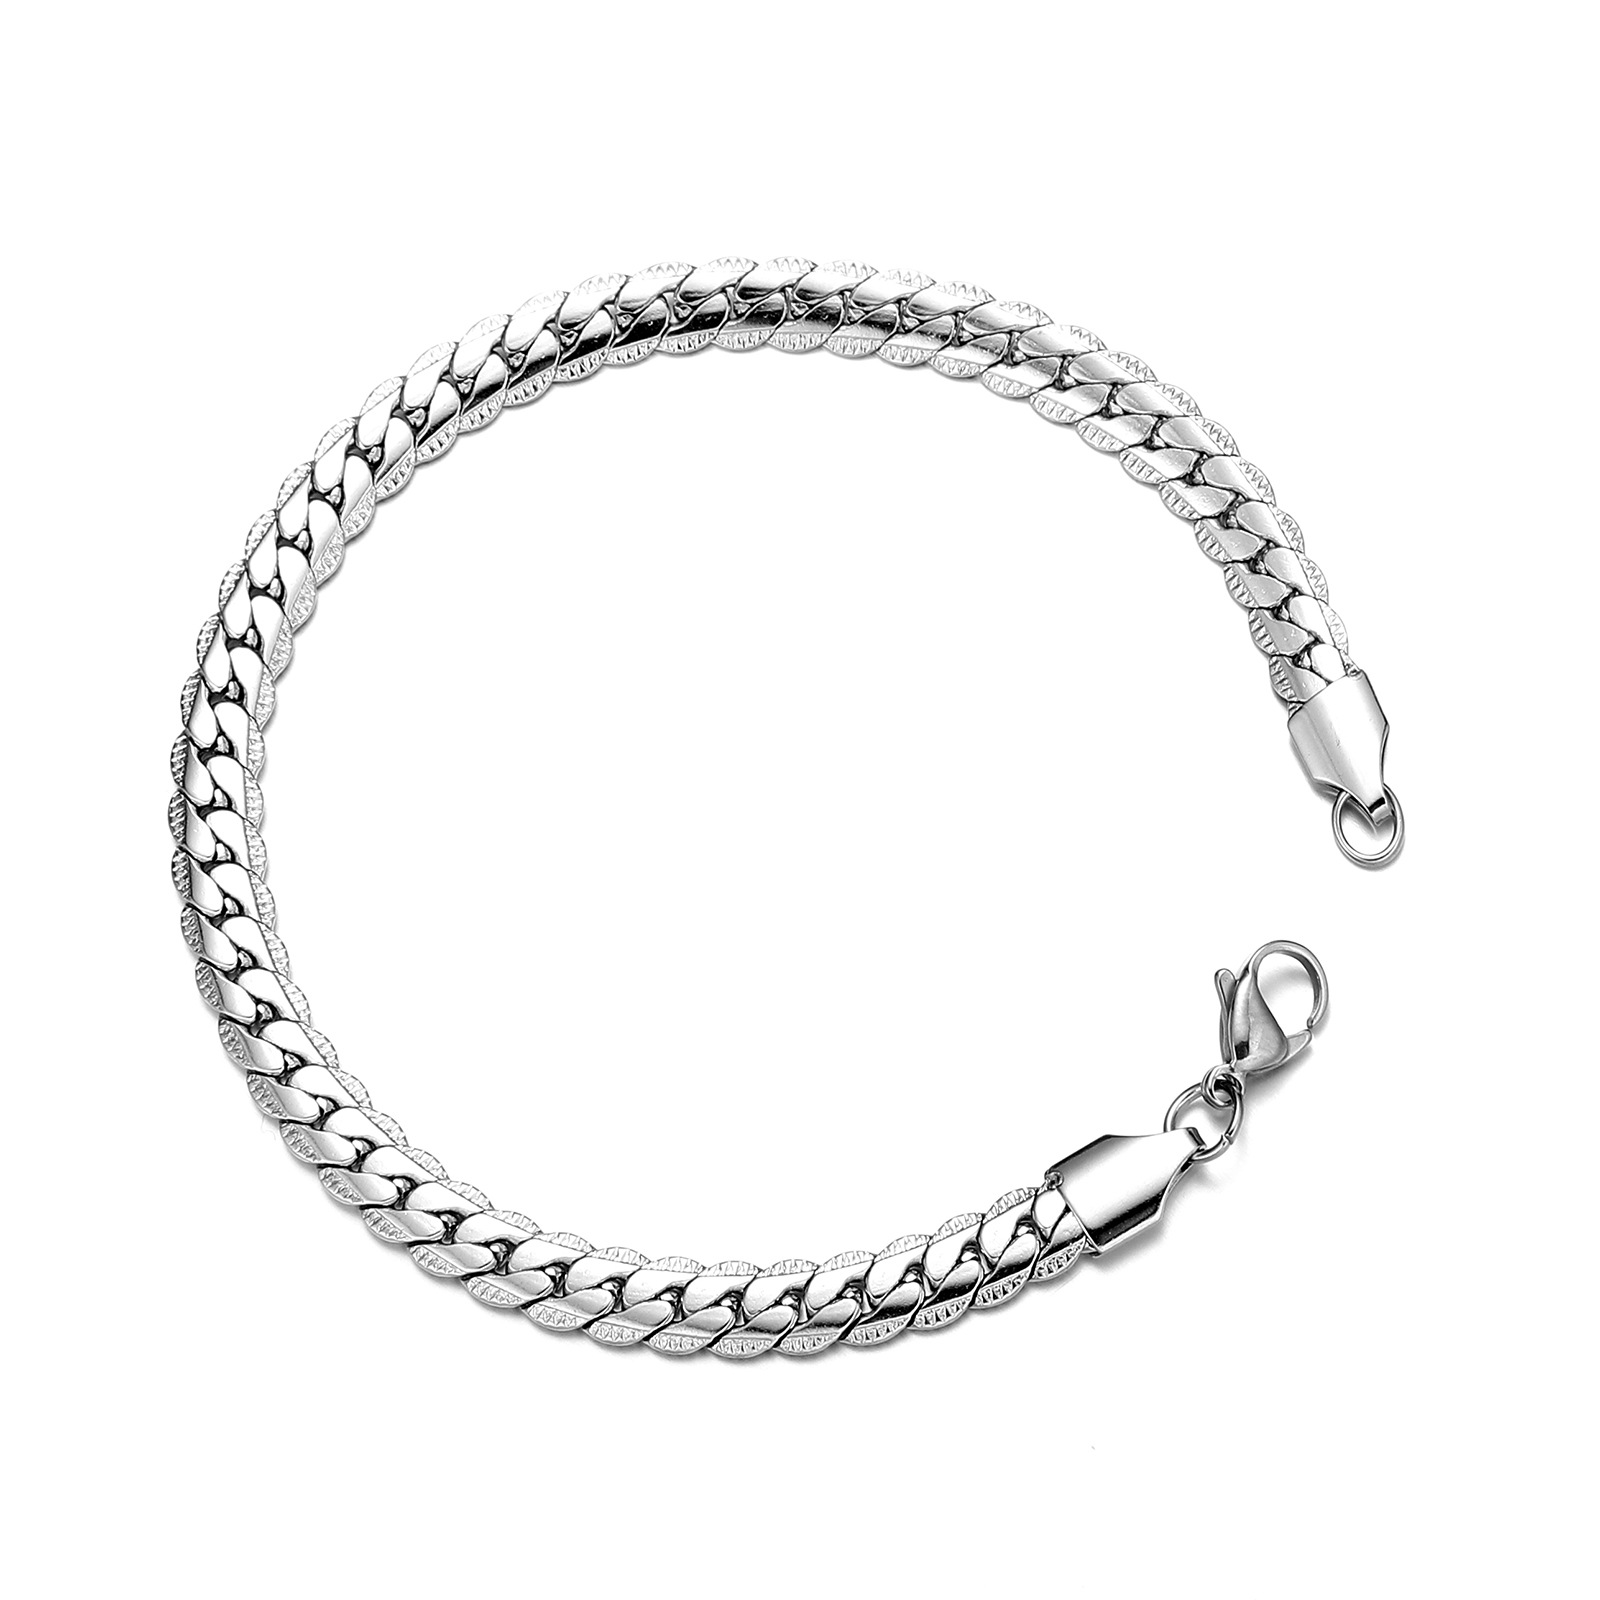 Silver bracelet (21cm long) Width 5mm